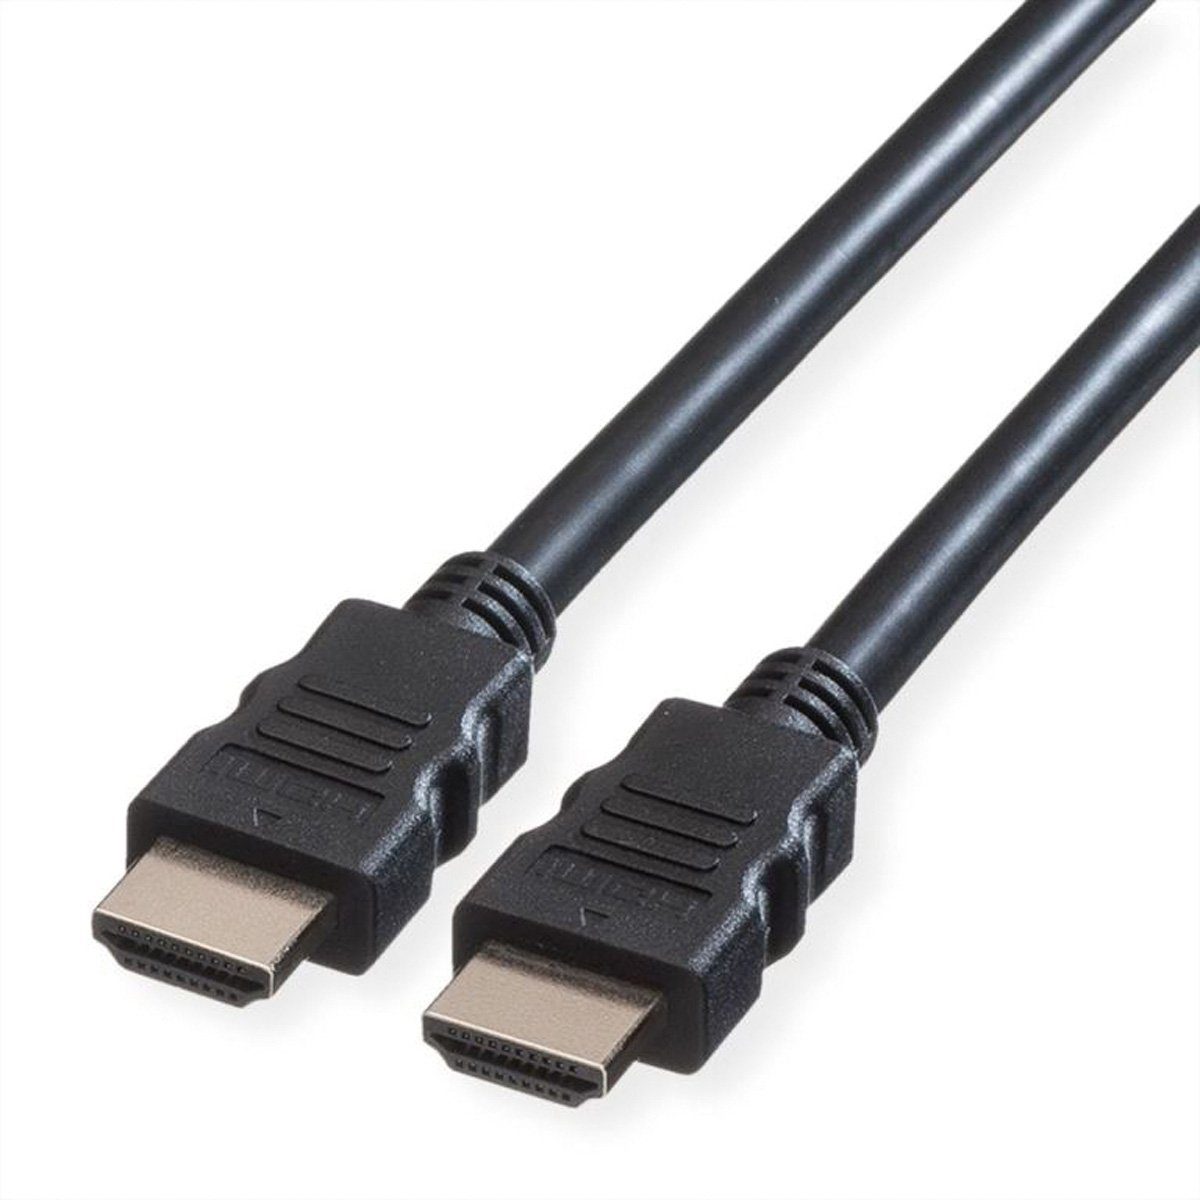 VALUE 8K HDMI Ultra HD Kabel mit Ethernet, ST/ST Audio- & Video-Kabel, HDMI Typ A Männlich (Stecker), HDMI Typ A Männlich (Stecker) (200.0 cm)